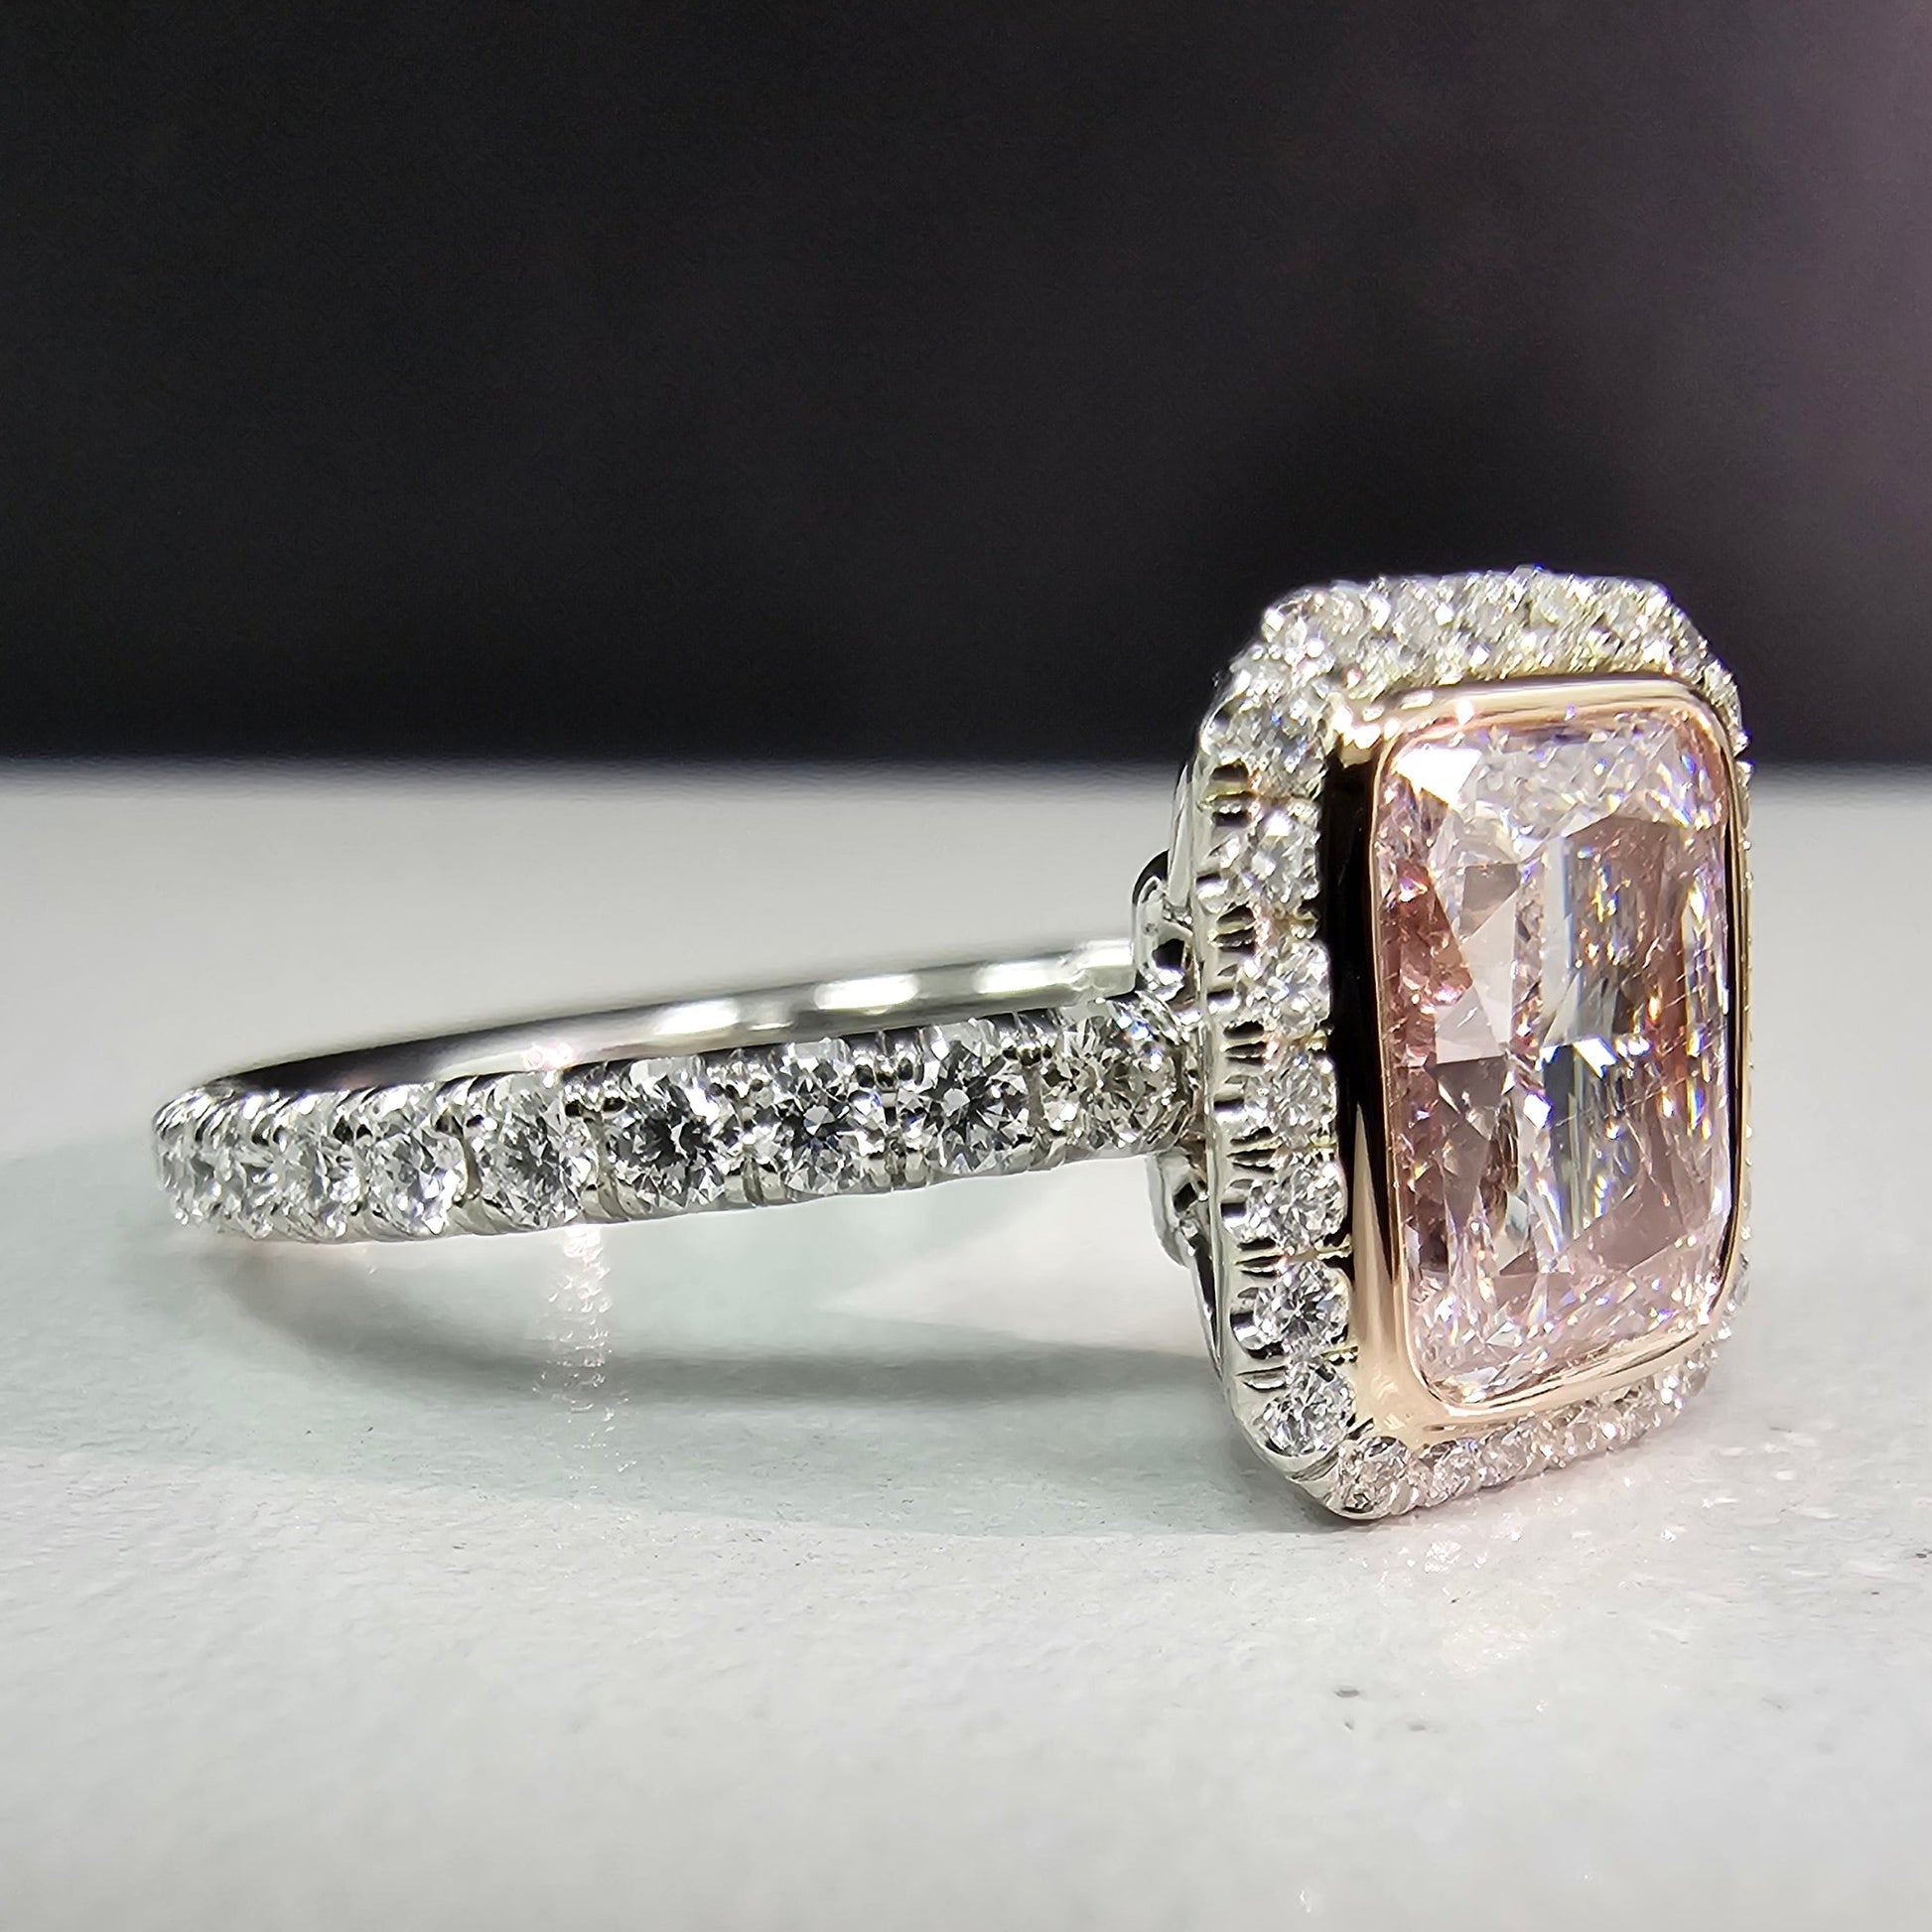 Elongated radiant diamond, pink elongated radiant, pink diamond, faint pink diamond, faint pink radiant